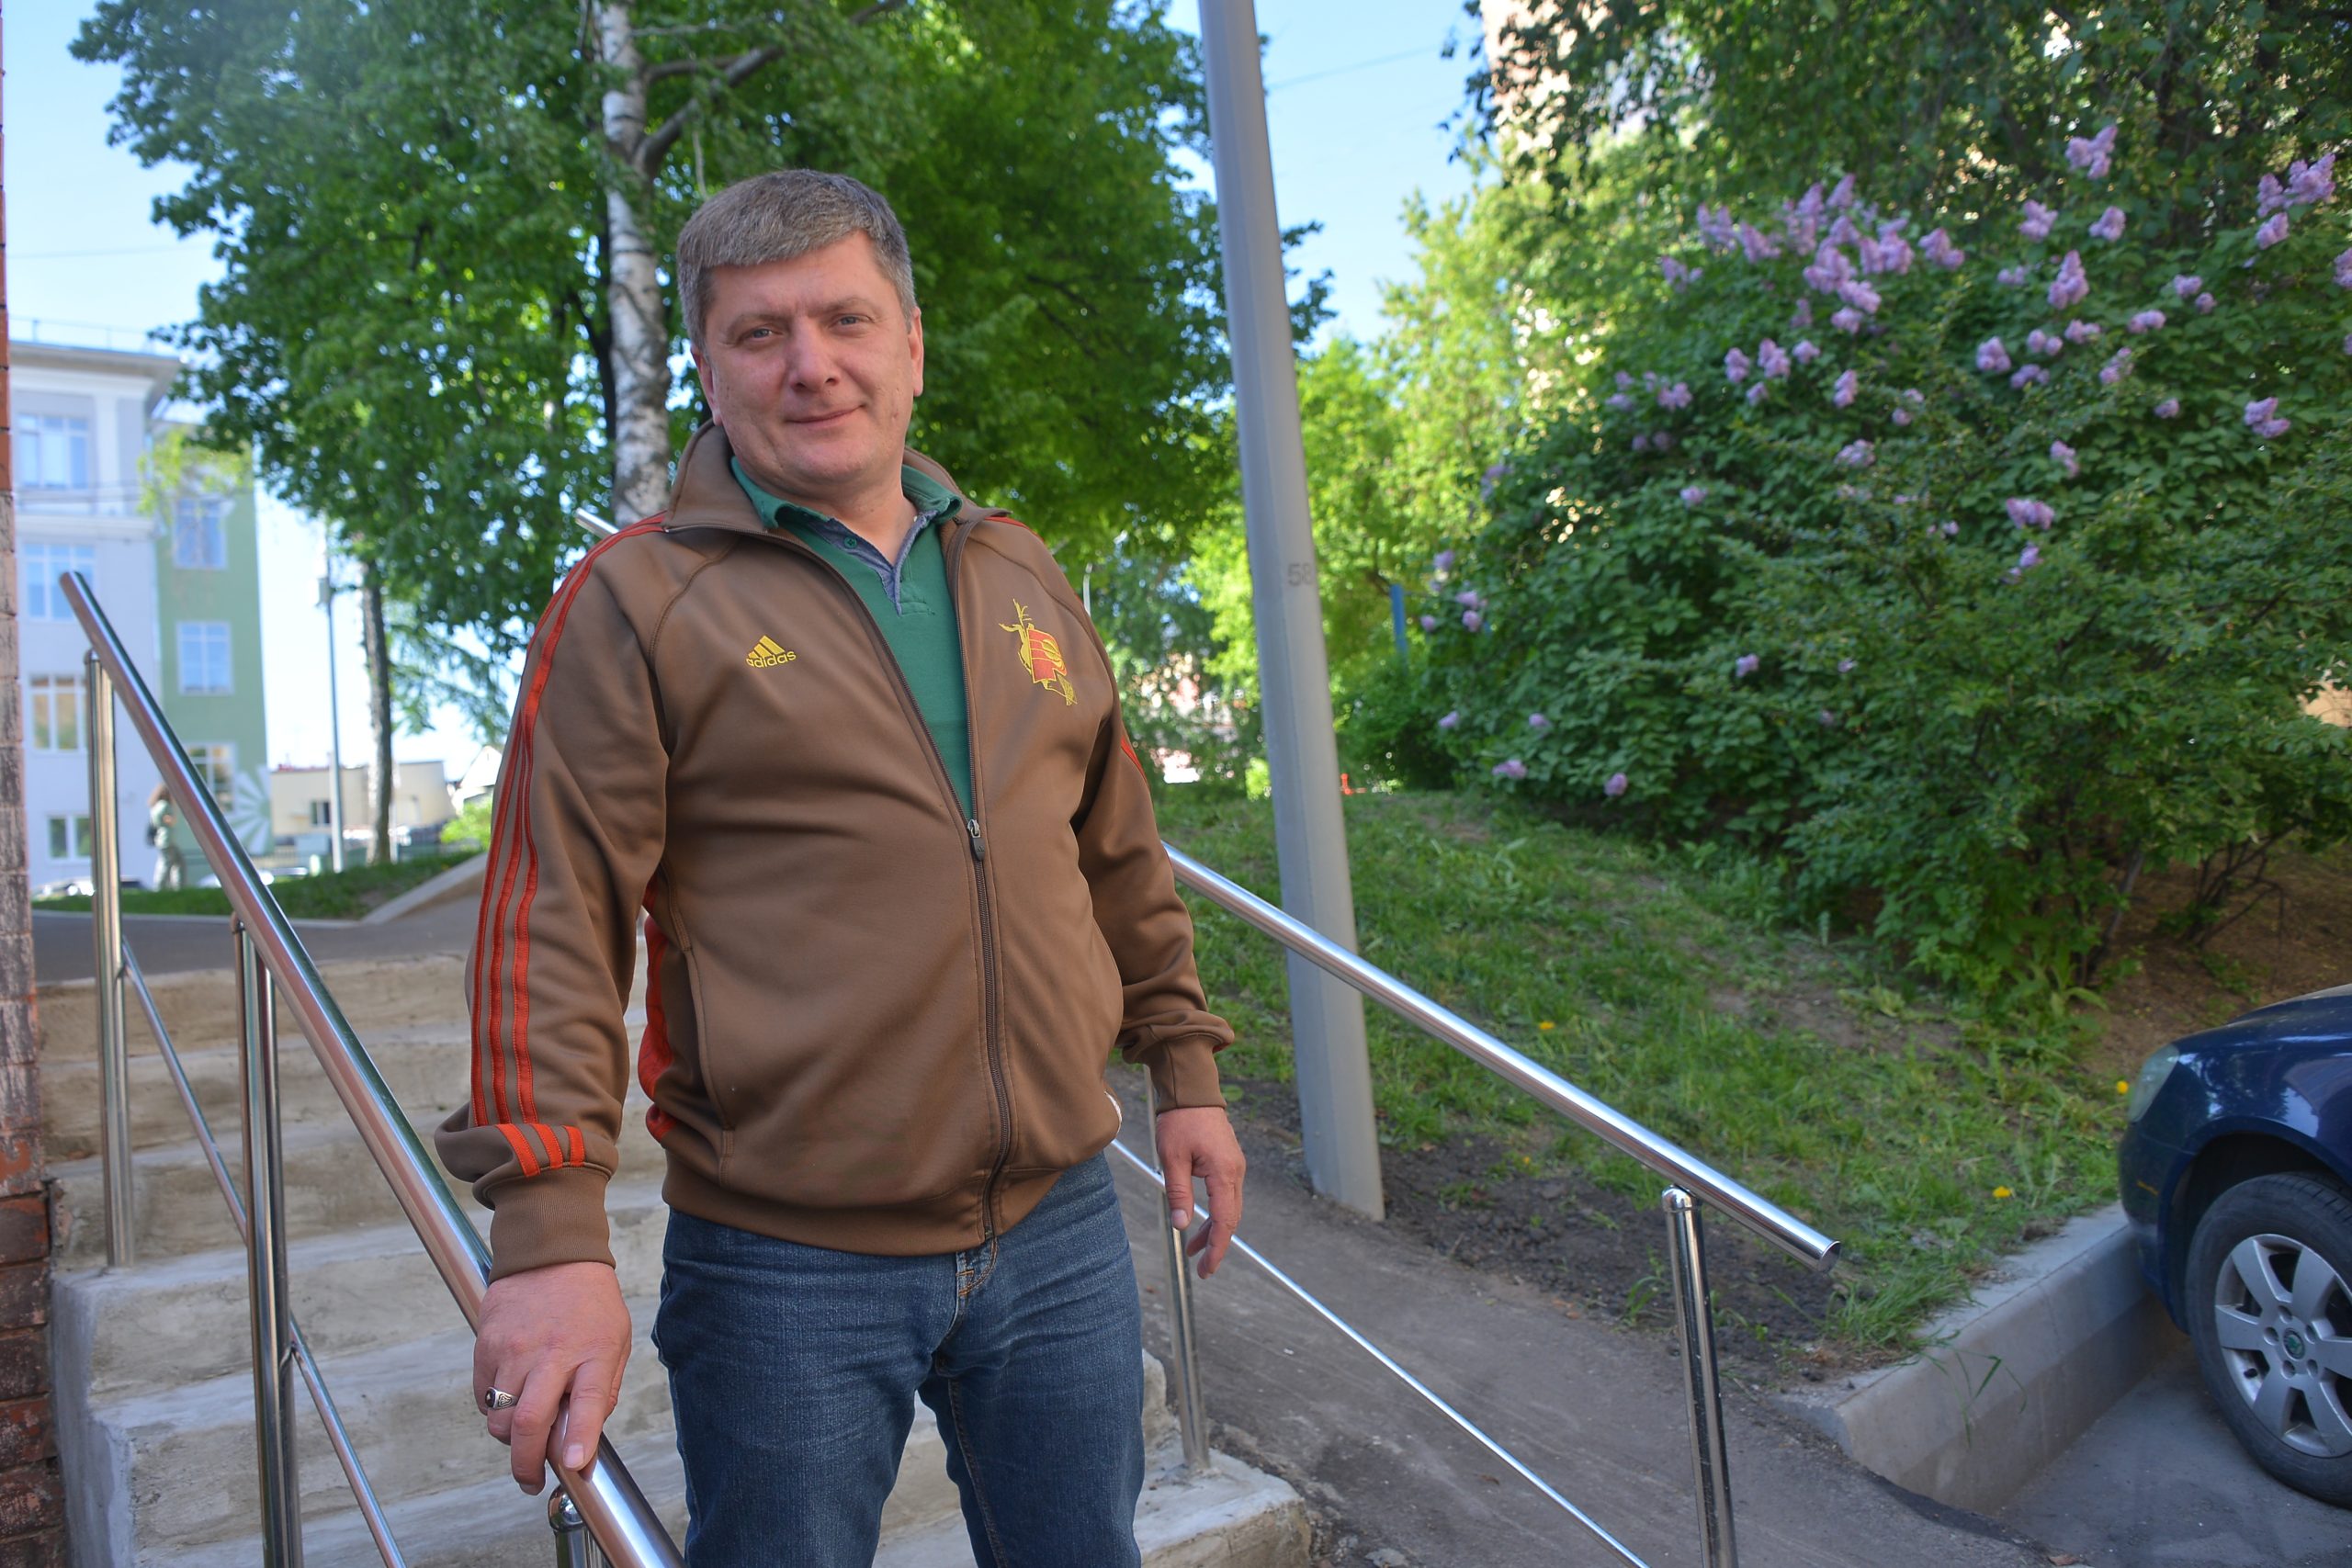 Начальник участка Эмиль Хасянов лично проверил, как отремонтировали лестницу возле дома. Фото: Анна Малакмадзе, «Вечерняя Москва»